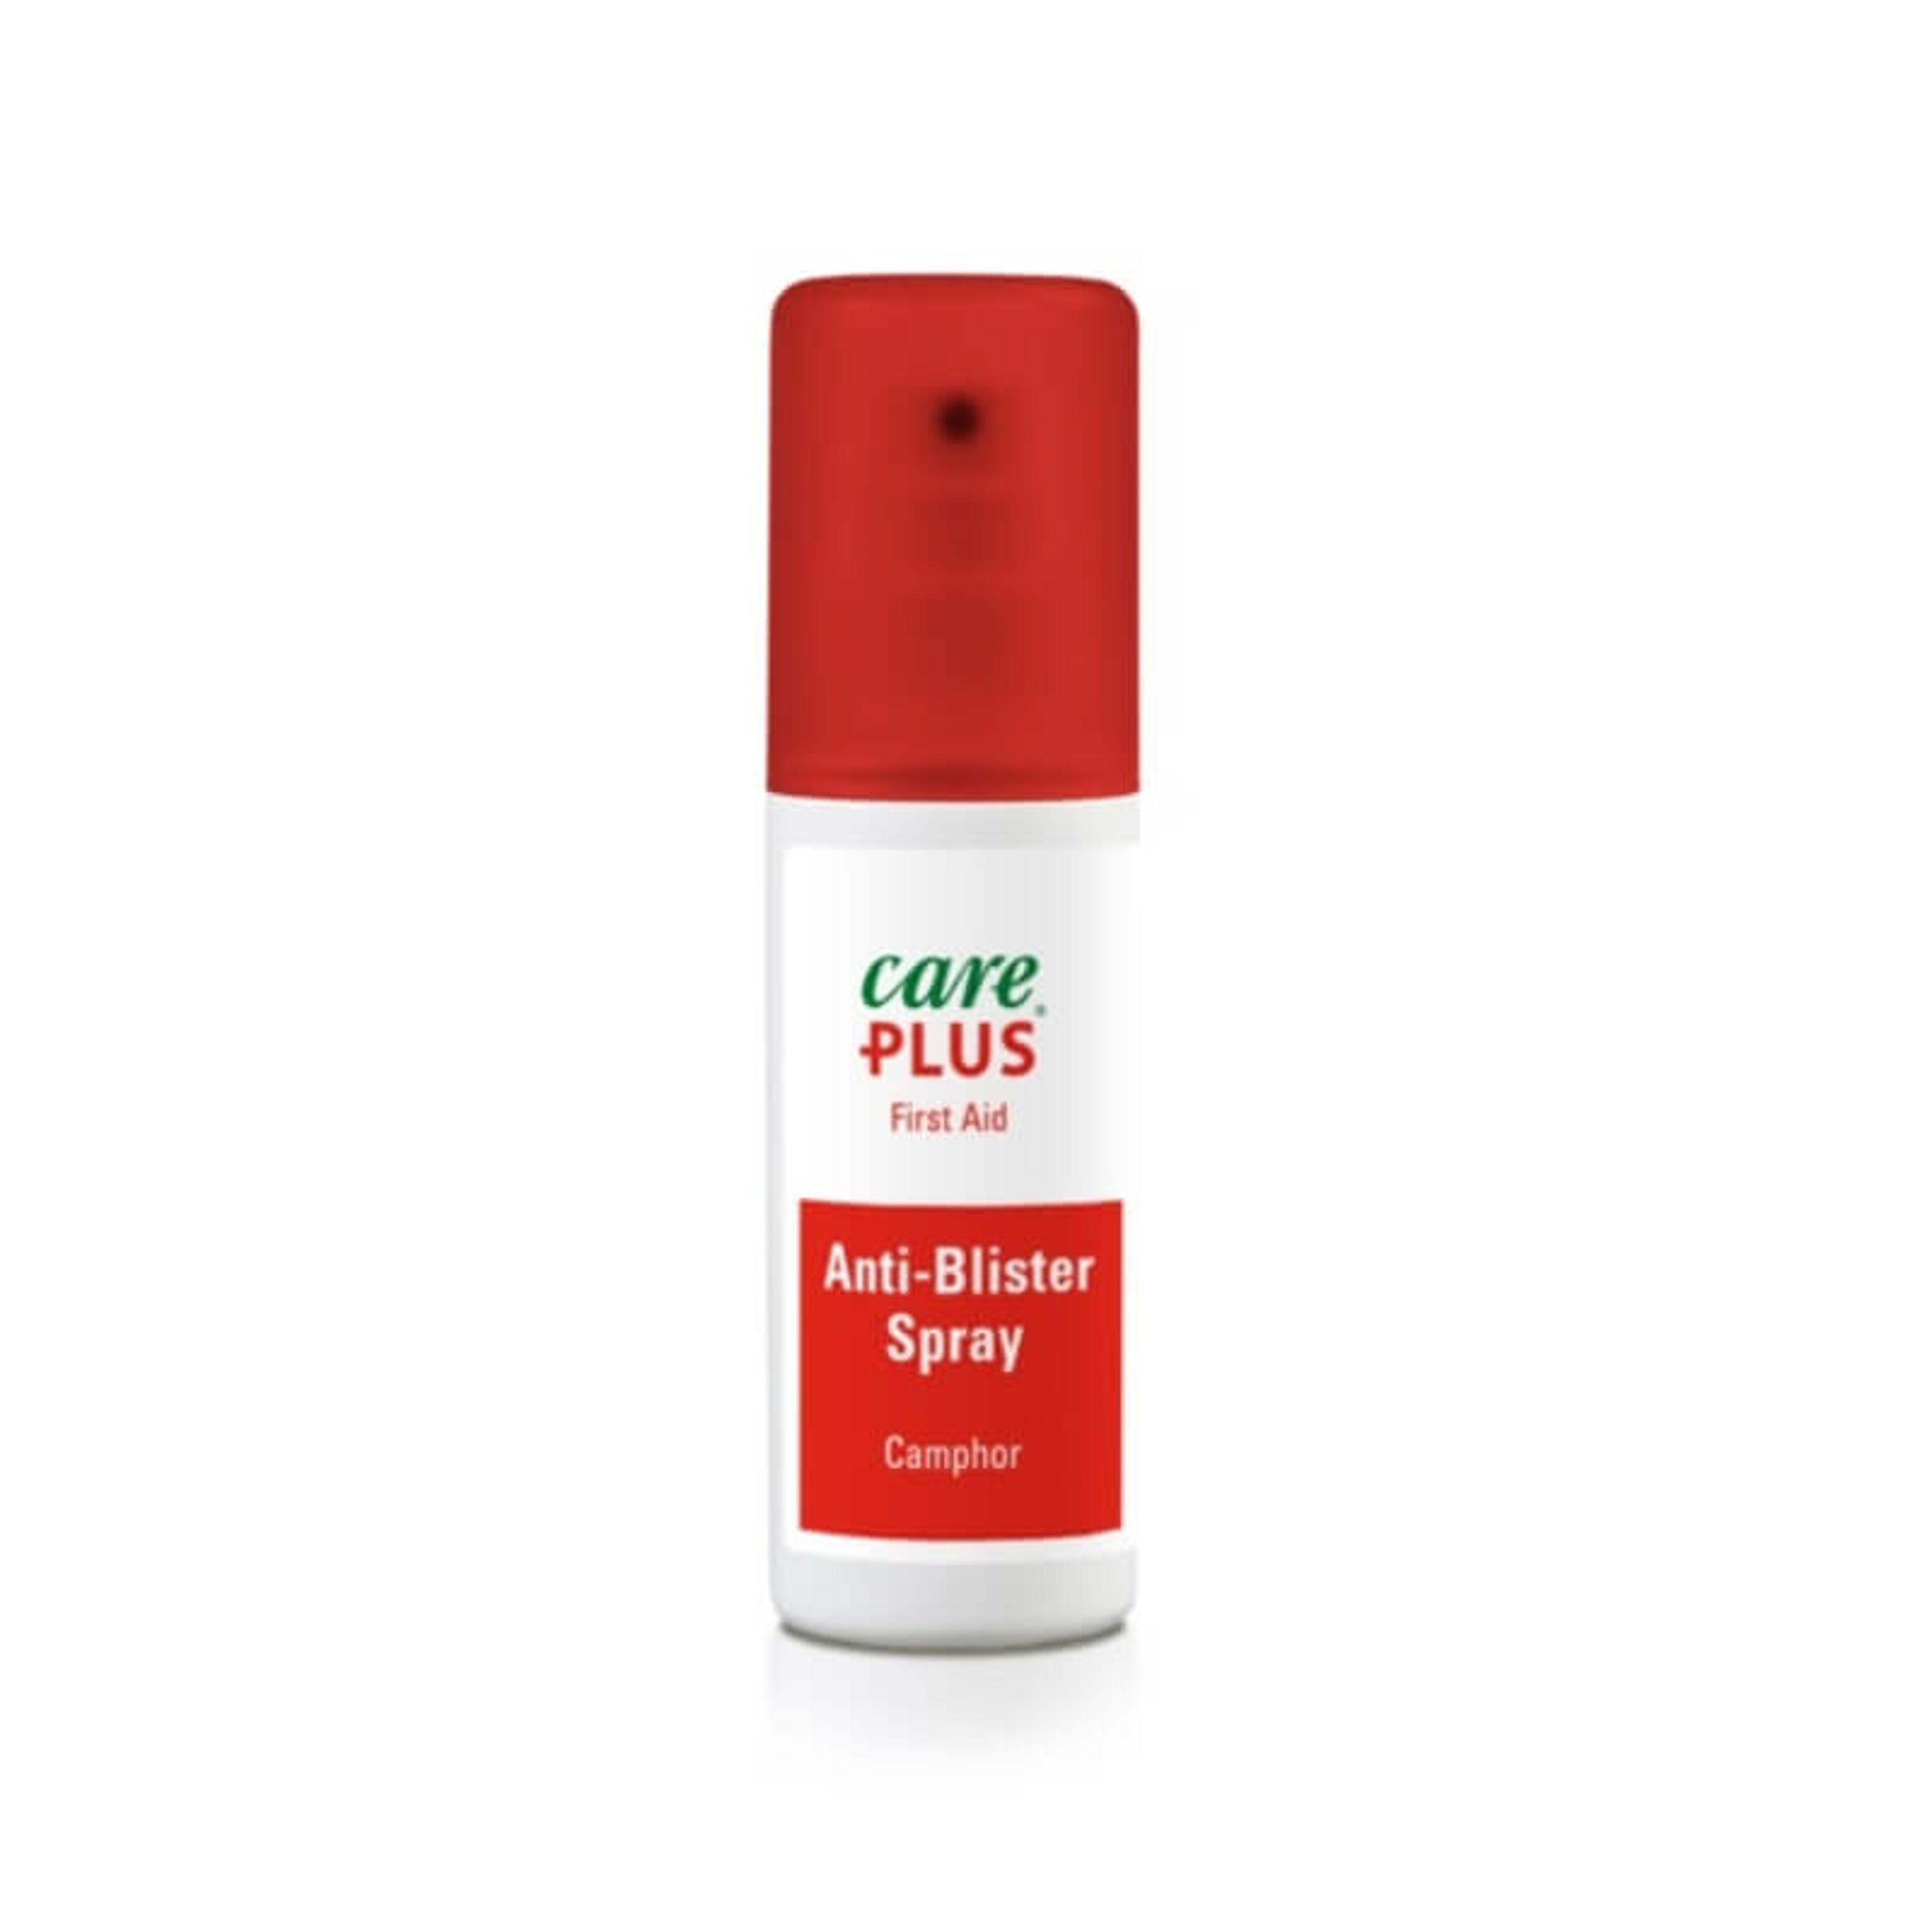 Care Plus Anti-Blister Spray – 50ml